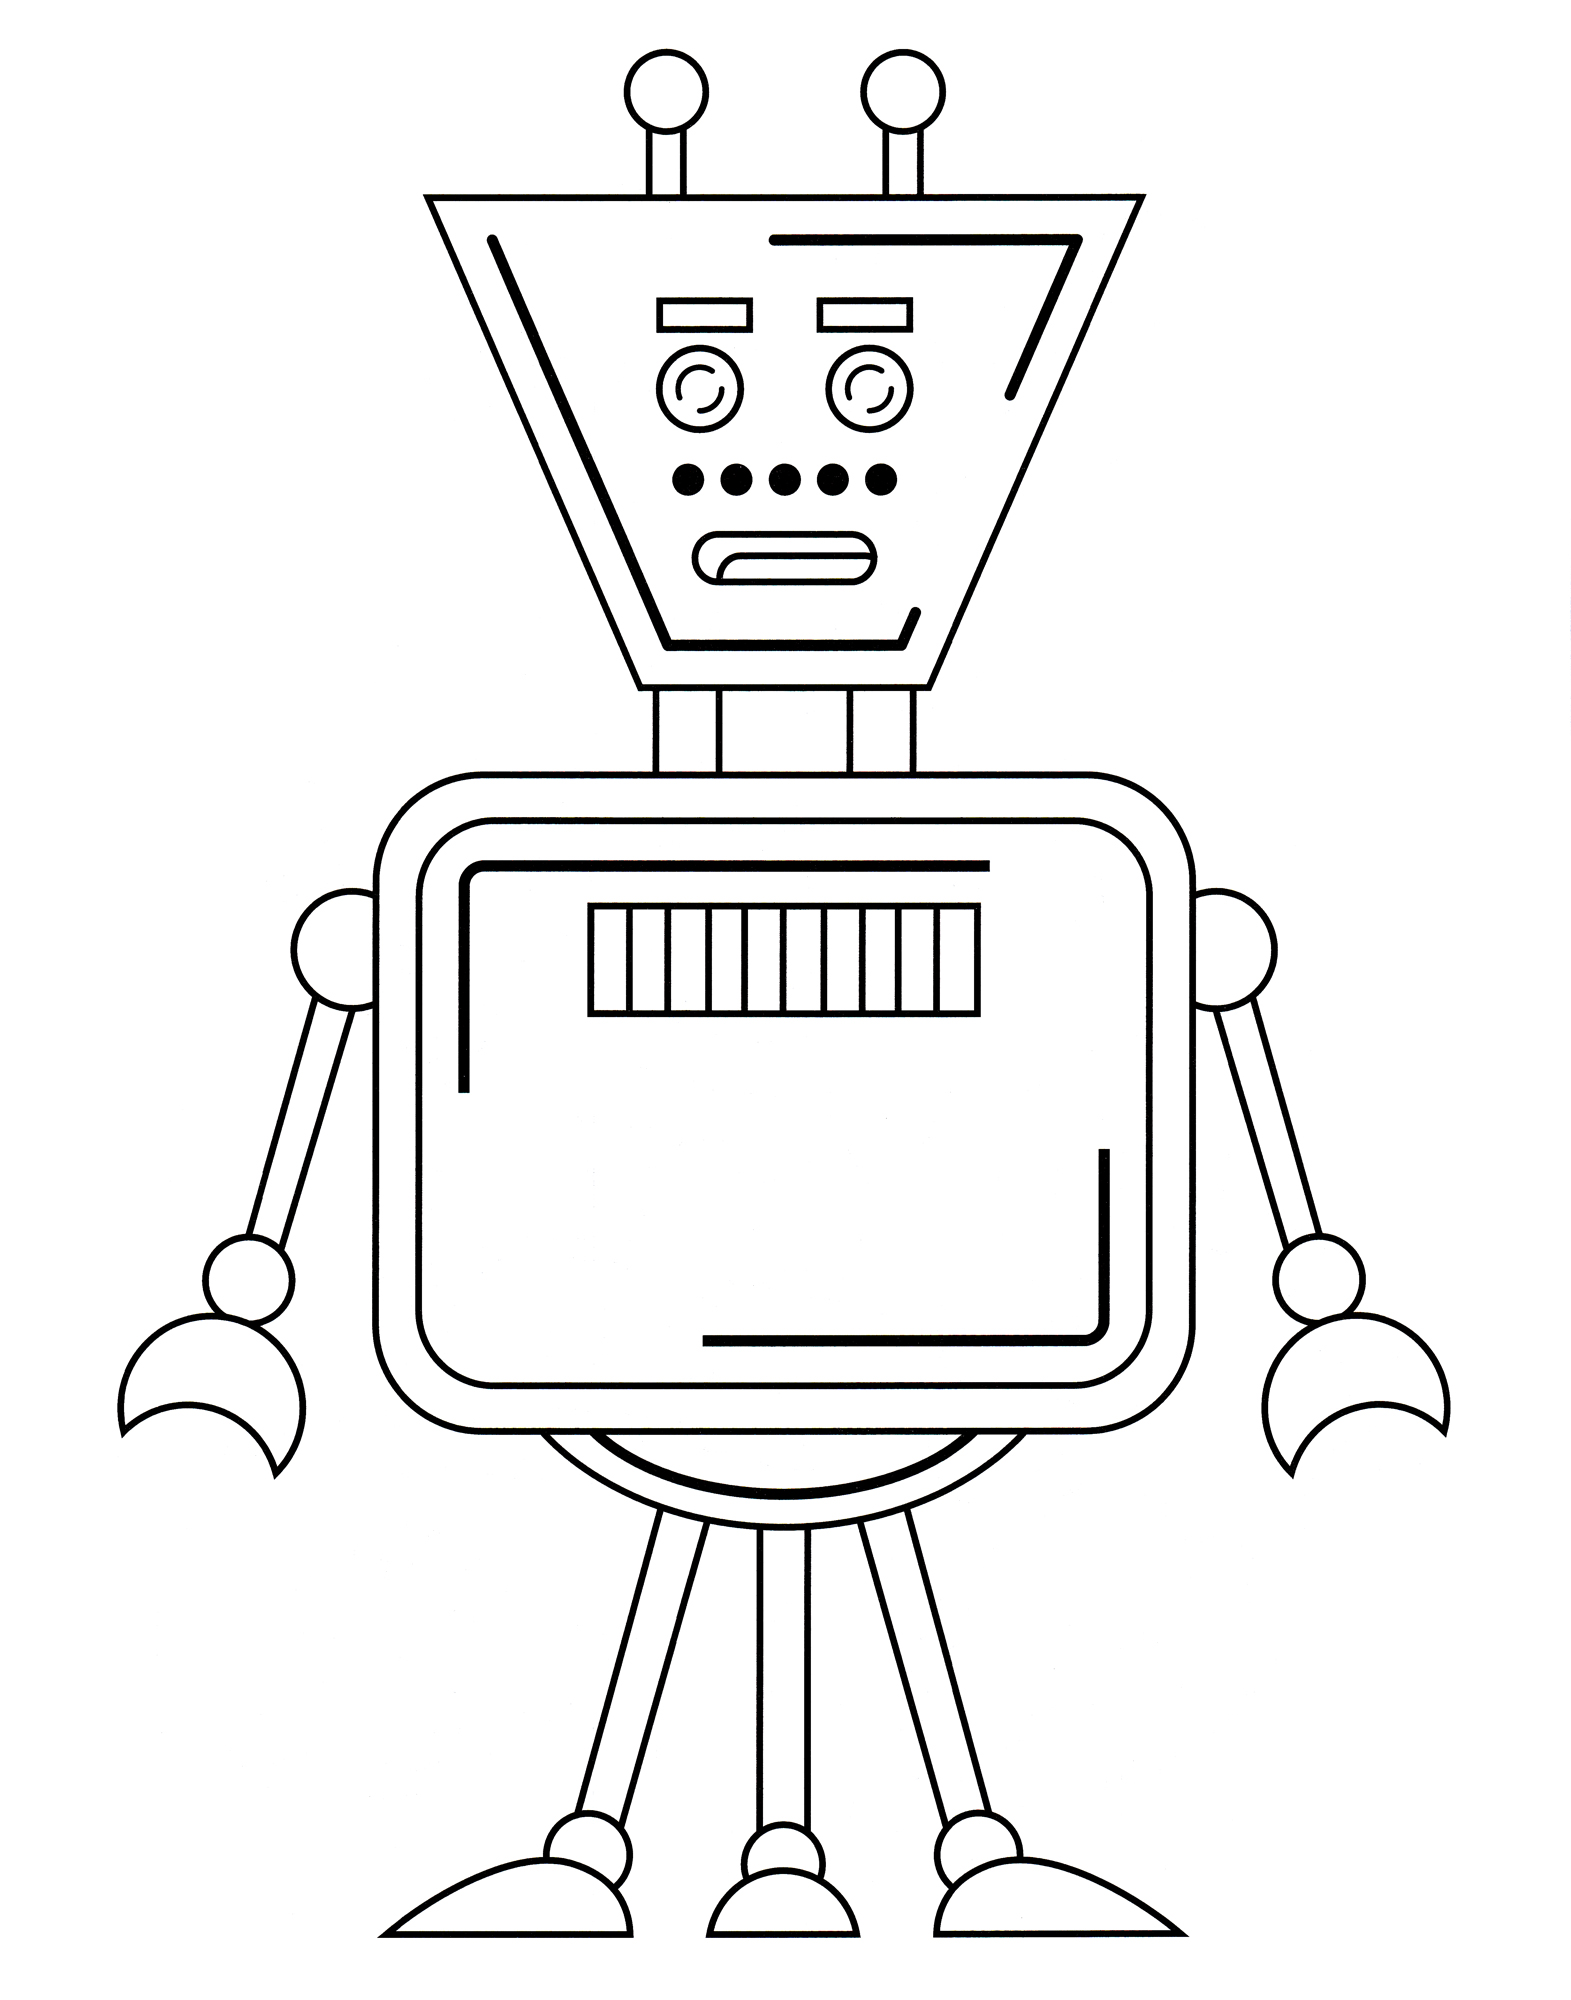 Раскраска Робот с трапециевидной головой